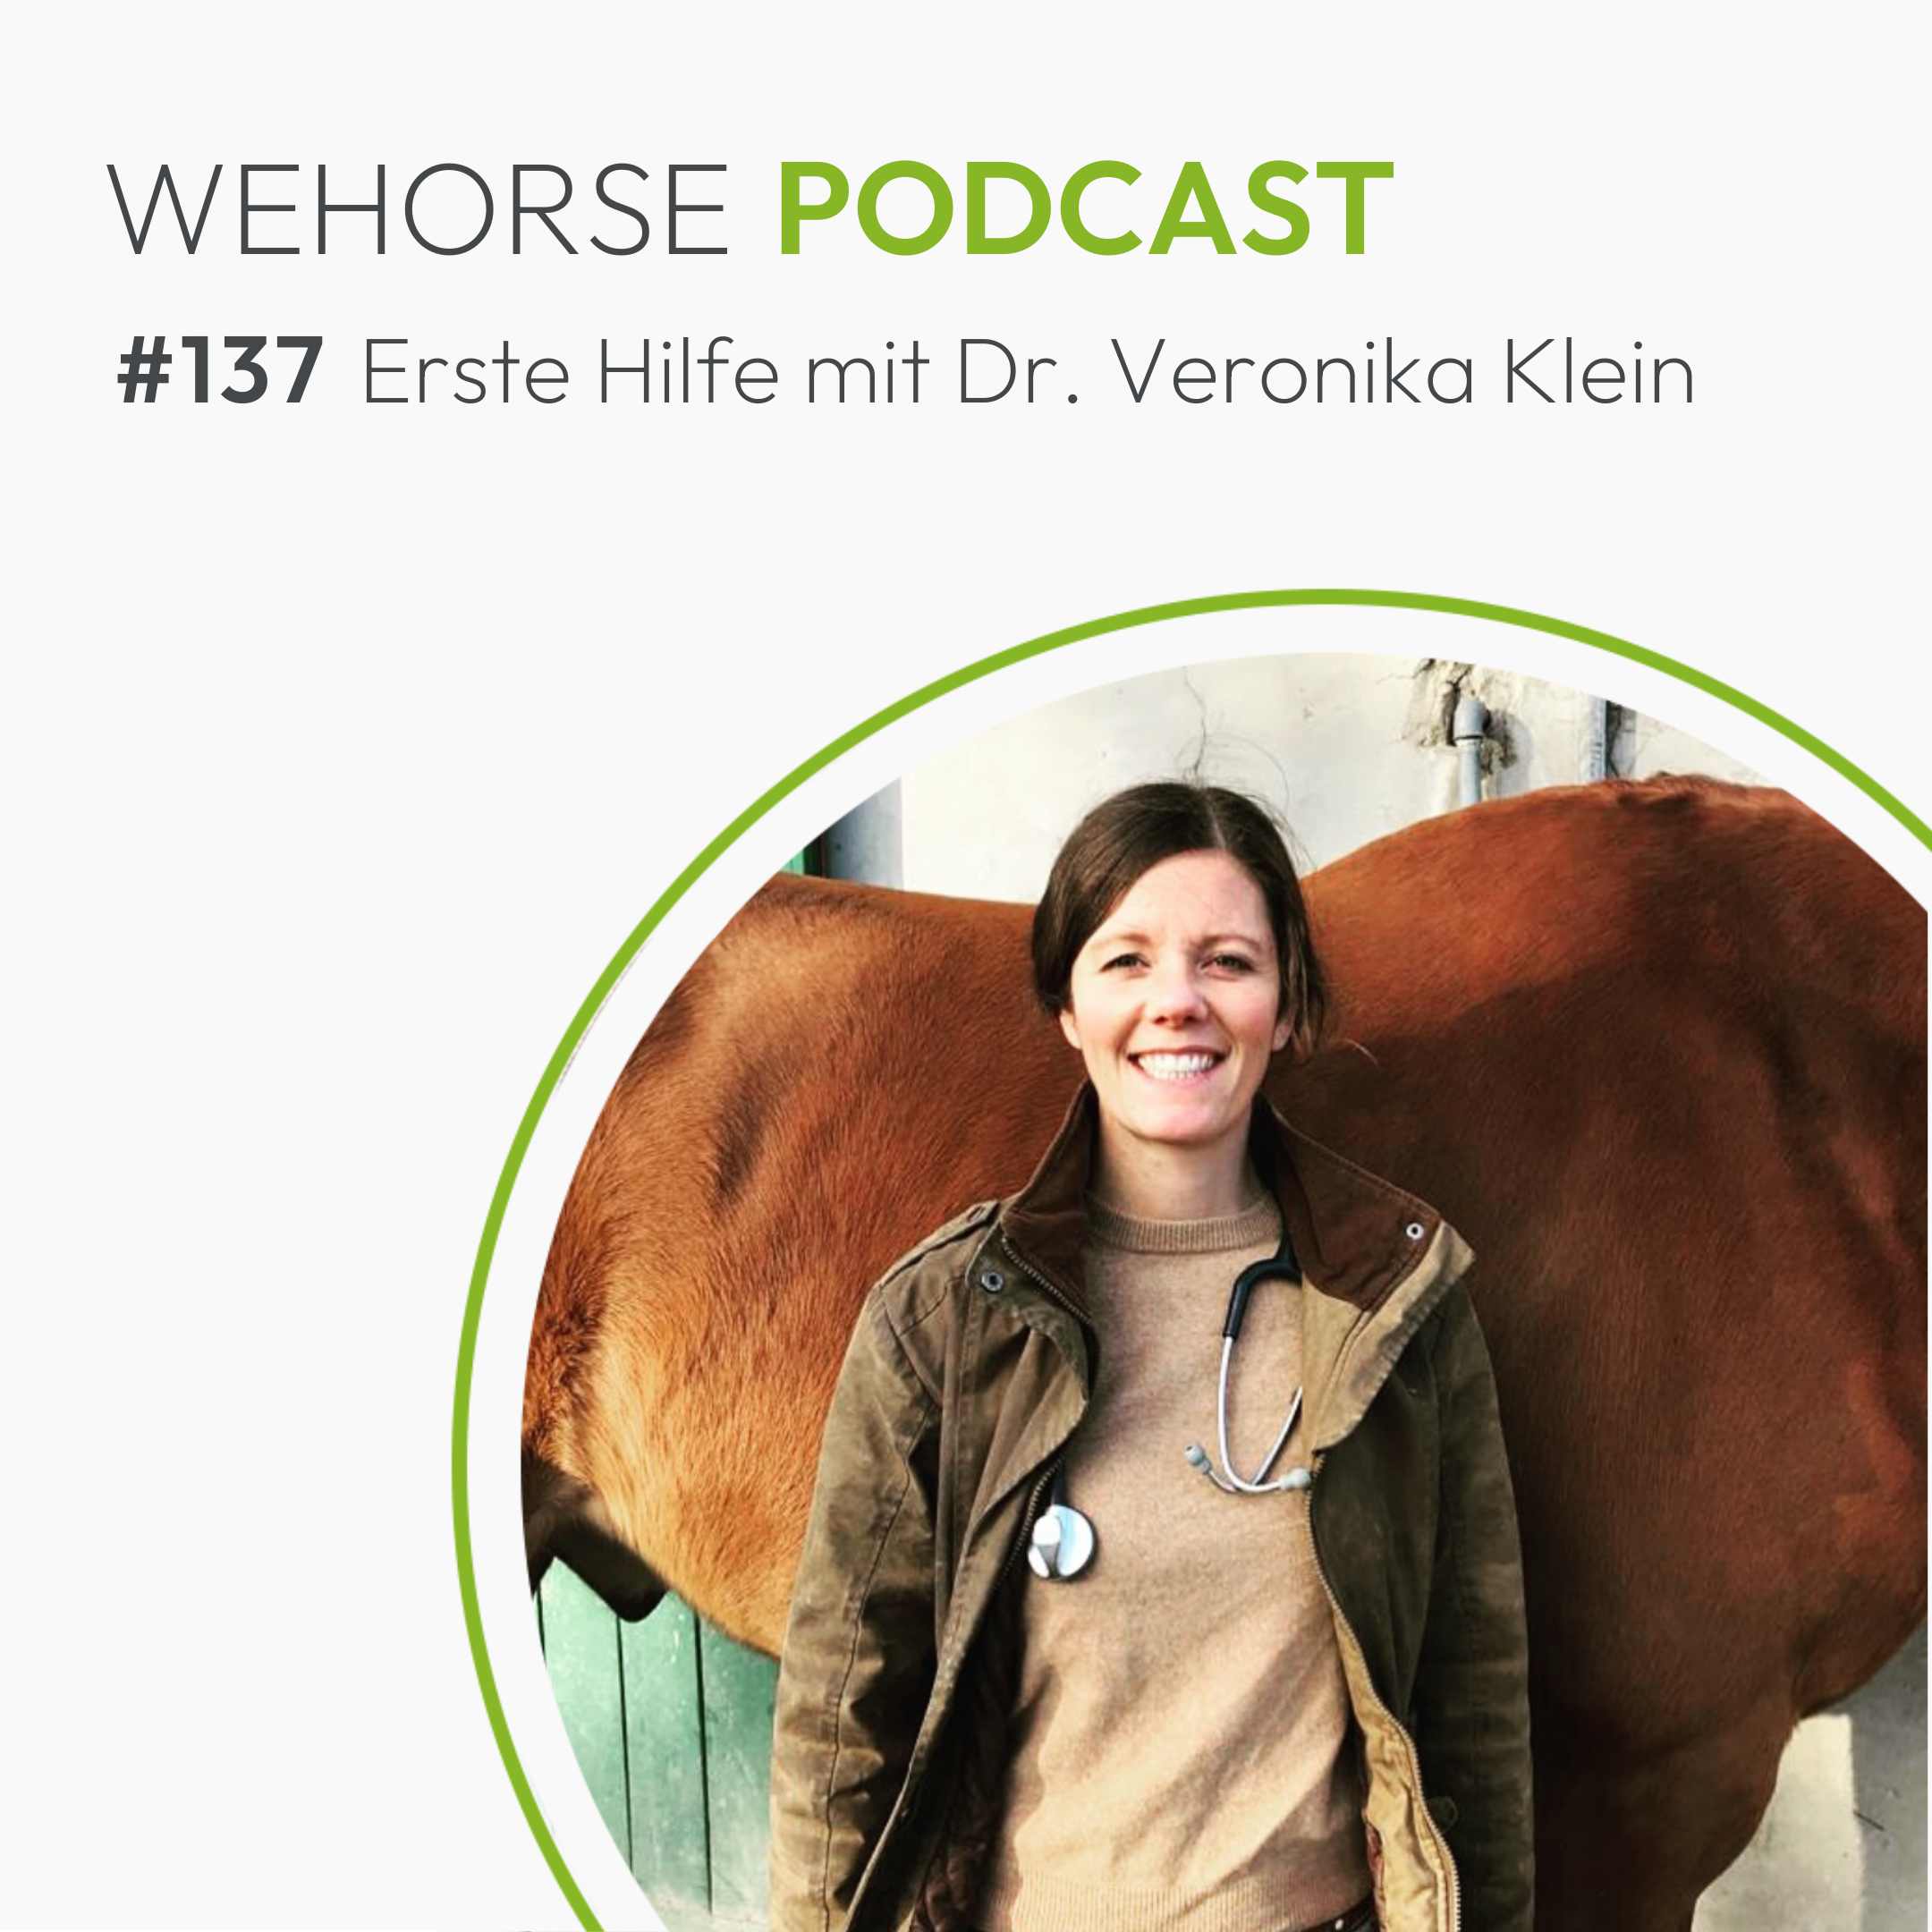 #137 Erste Hilfe lernen mit Dr. Veronika Klein